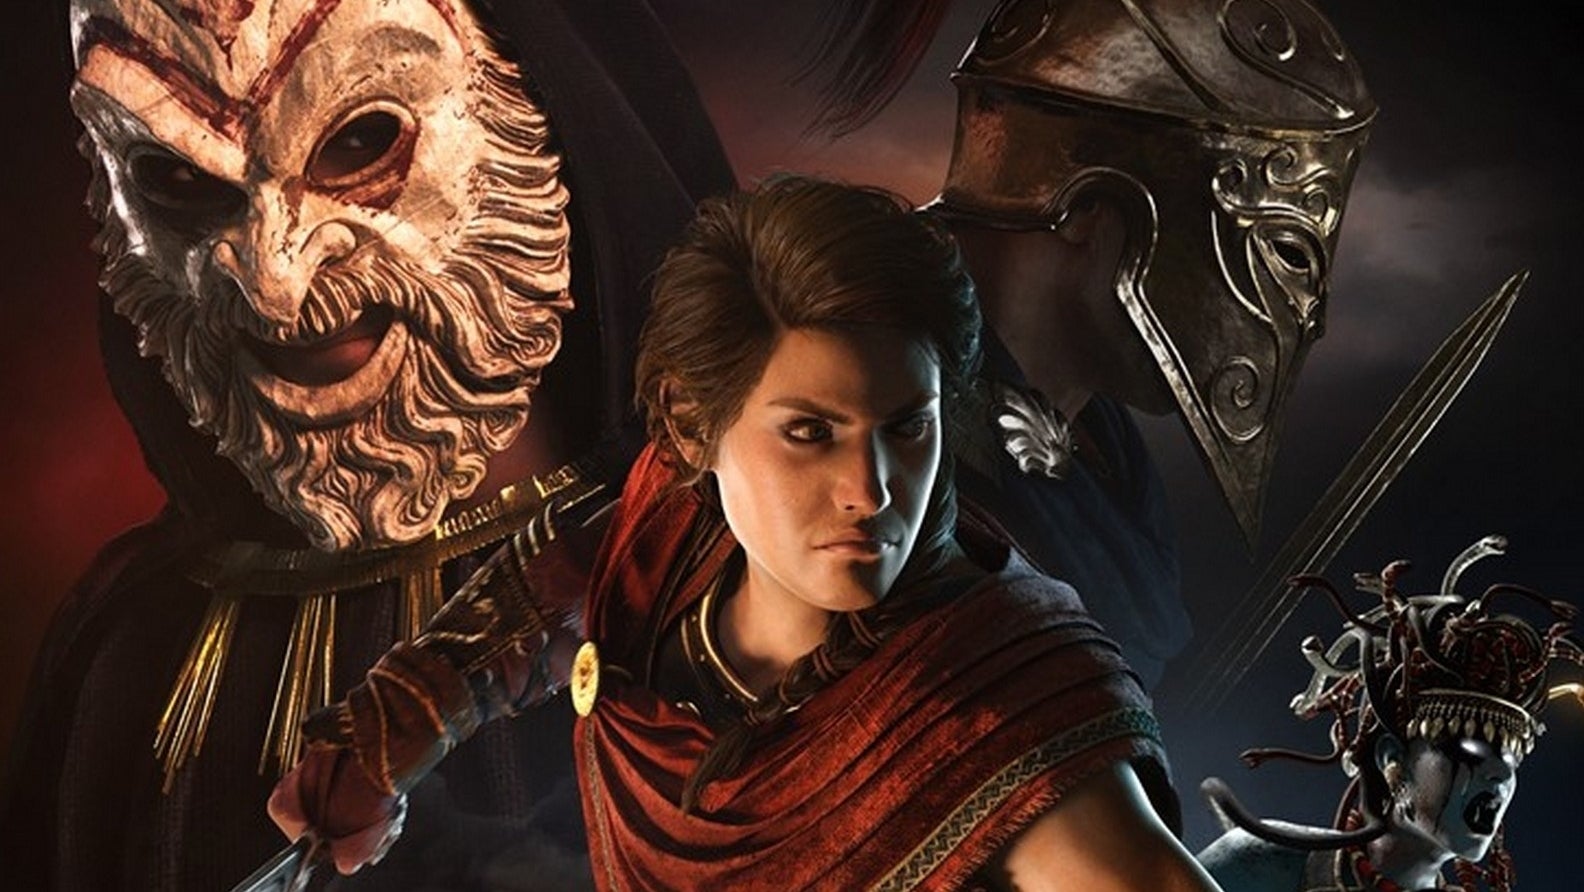 Bilder zu Bald gibt's einen Hauch von Valhalla in Assassin's Creed Odyssey